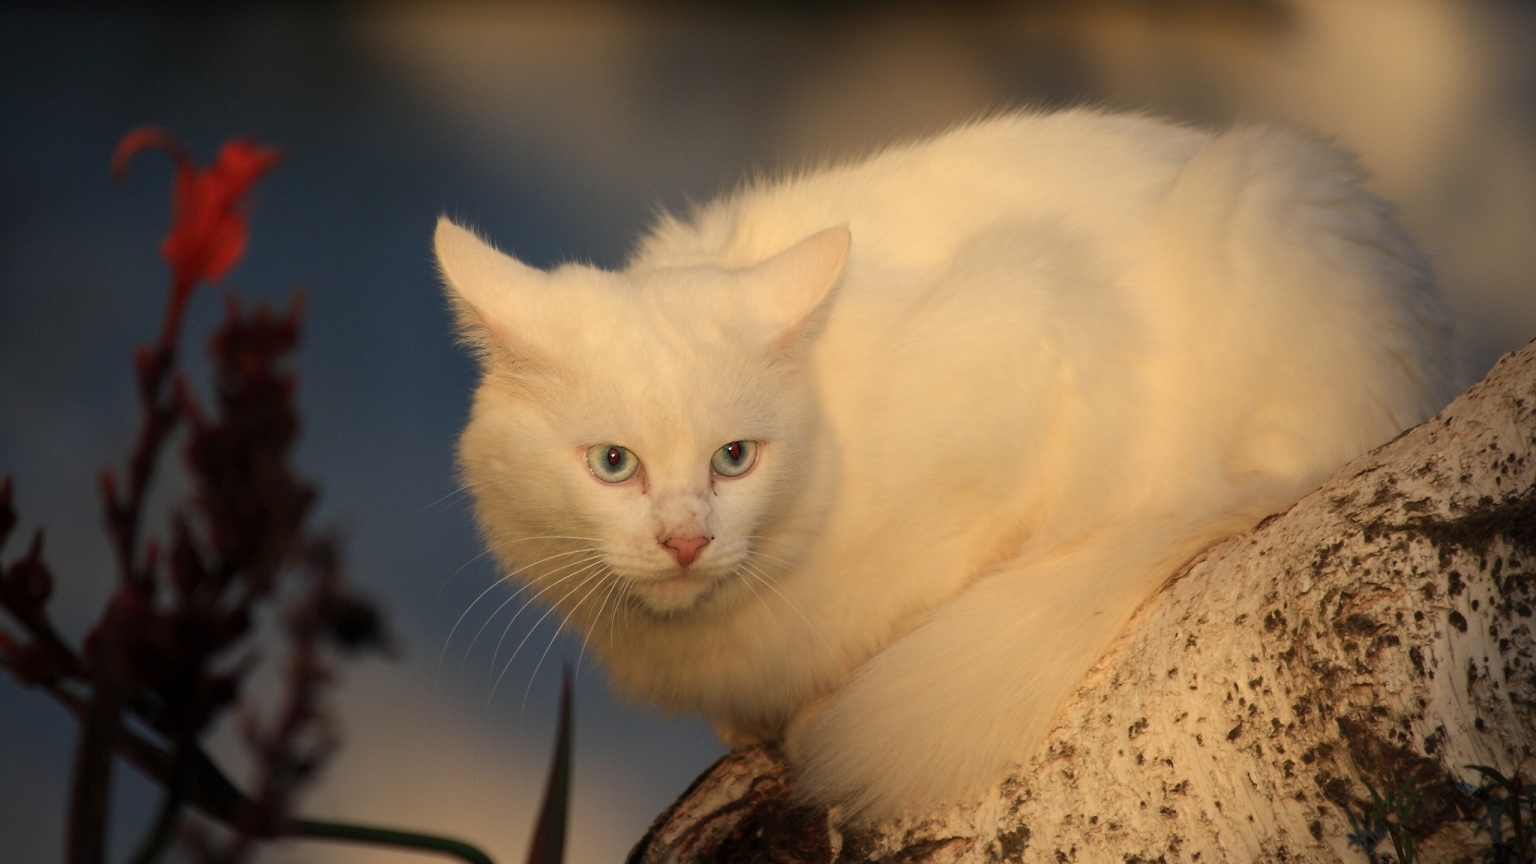 White Cat for 1536 x 864 HDTV resolution